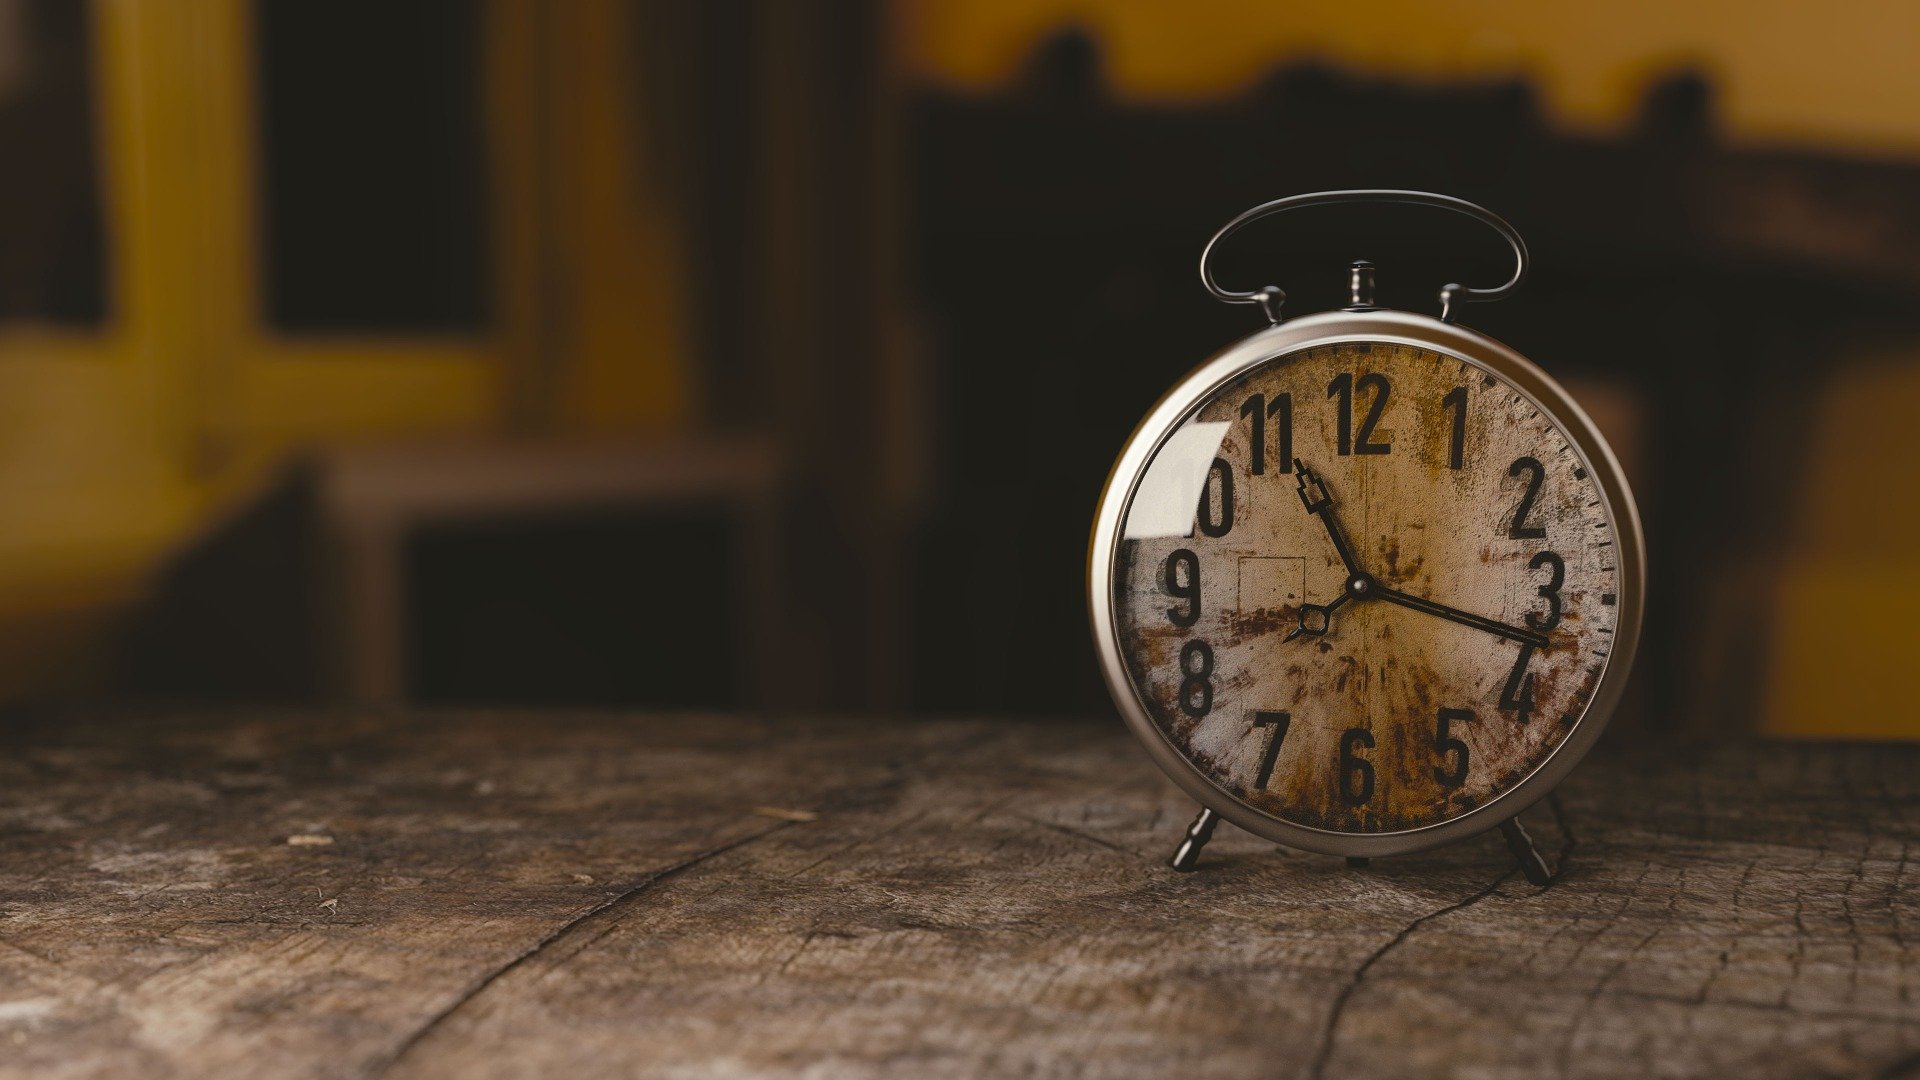 https://pixabay.com/photos/clock-alarm-clock-watch-time-old-1274699/